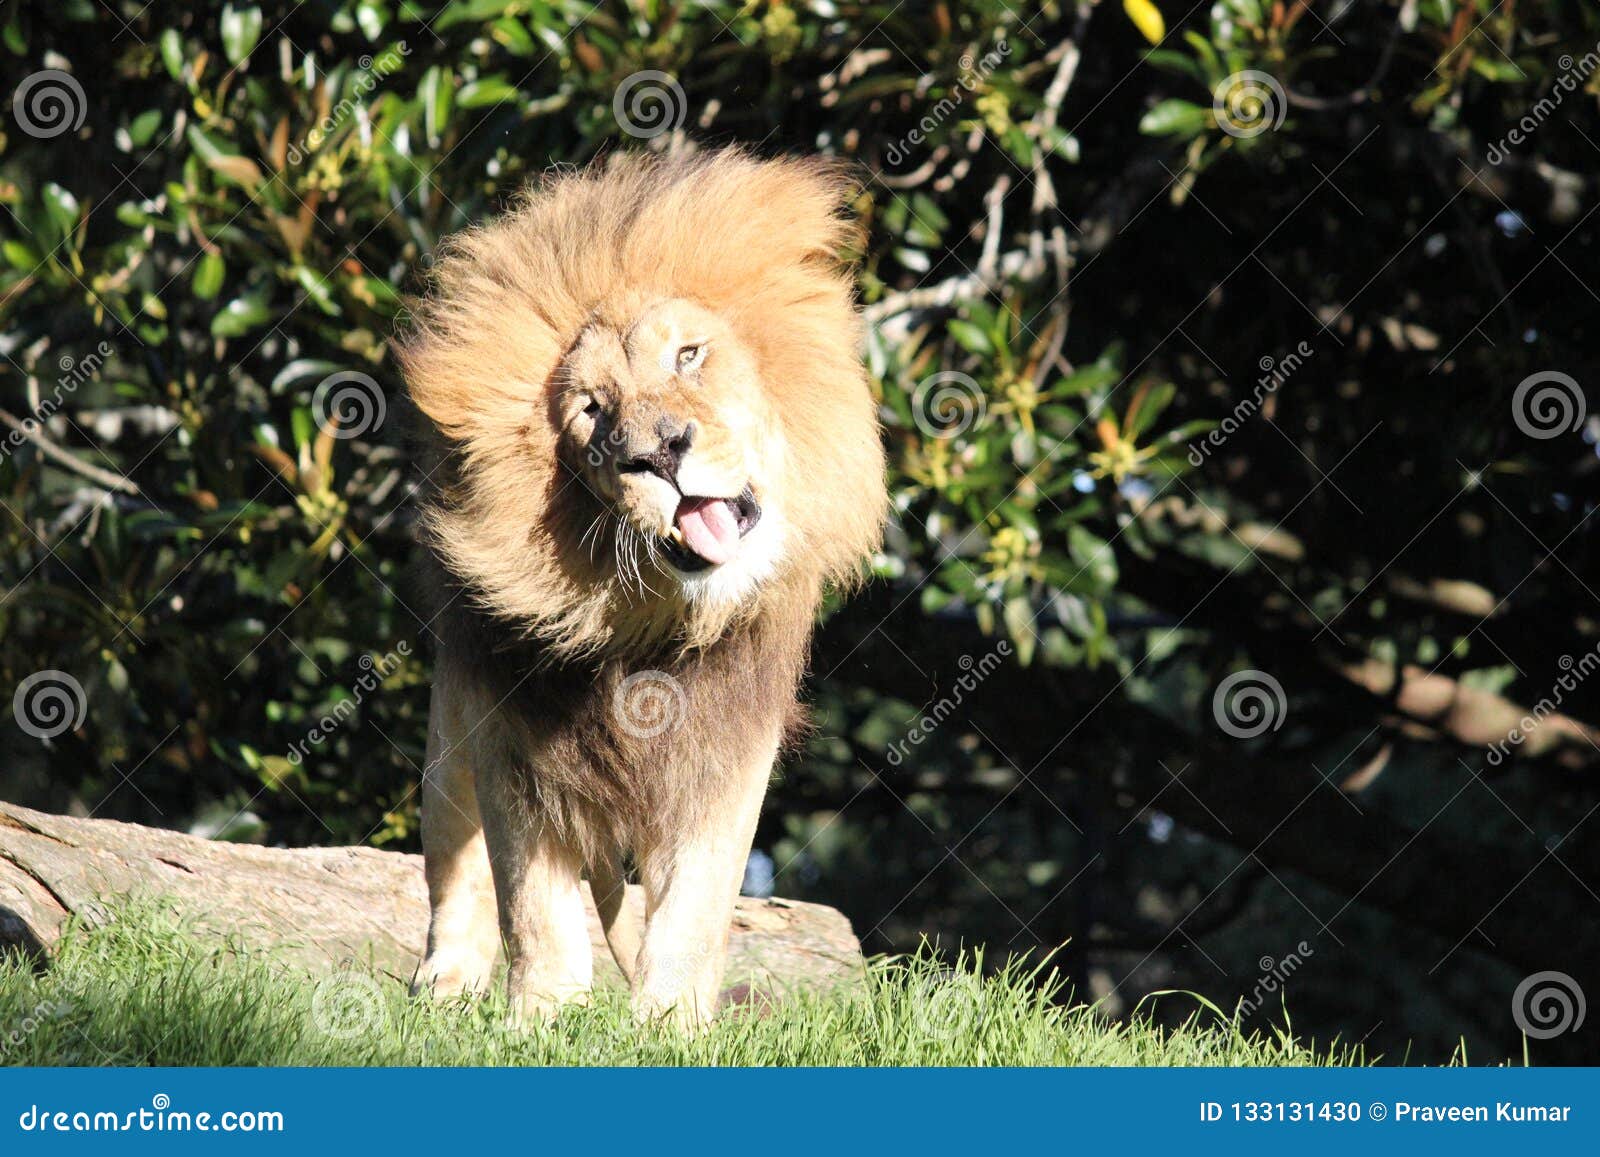 Lion hair crazy Purple lion.